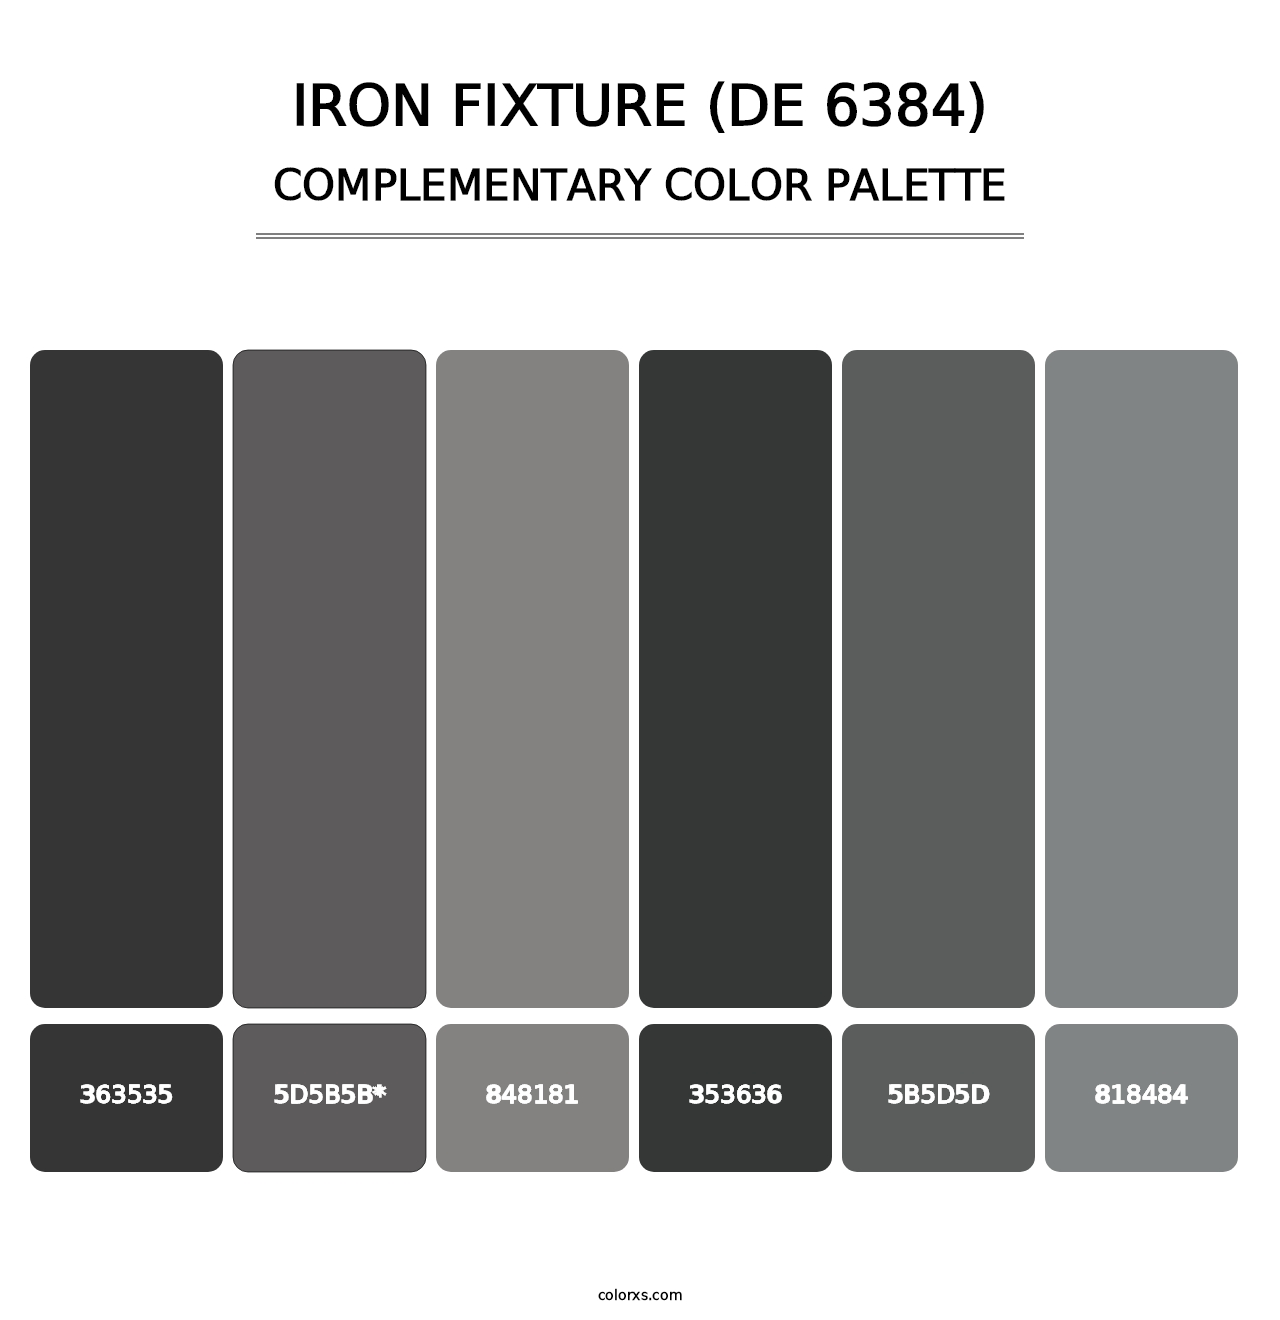 Iron Fixture (DE 6384) - Complementary Color Palette